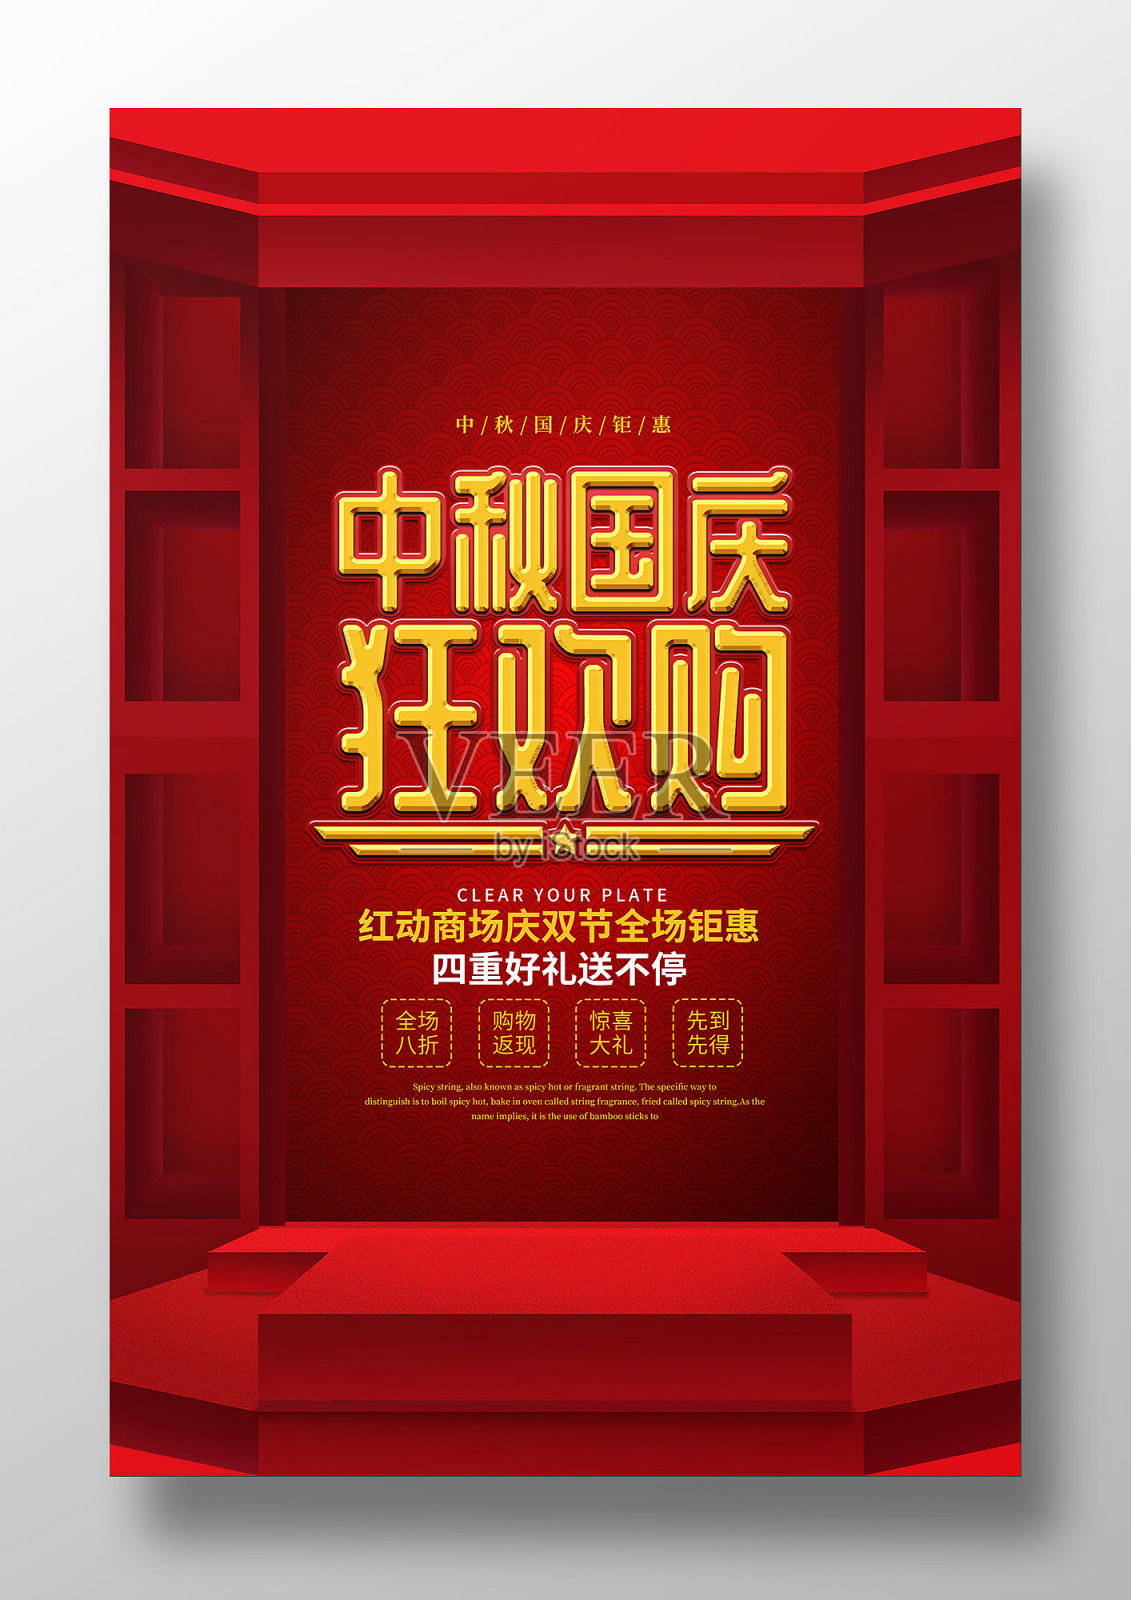 中秋国庆狂欢购节日促销海报设计模板素材